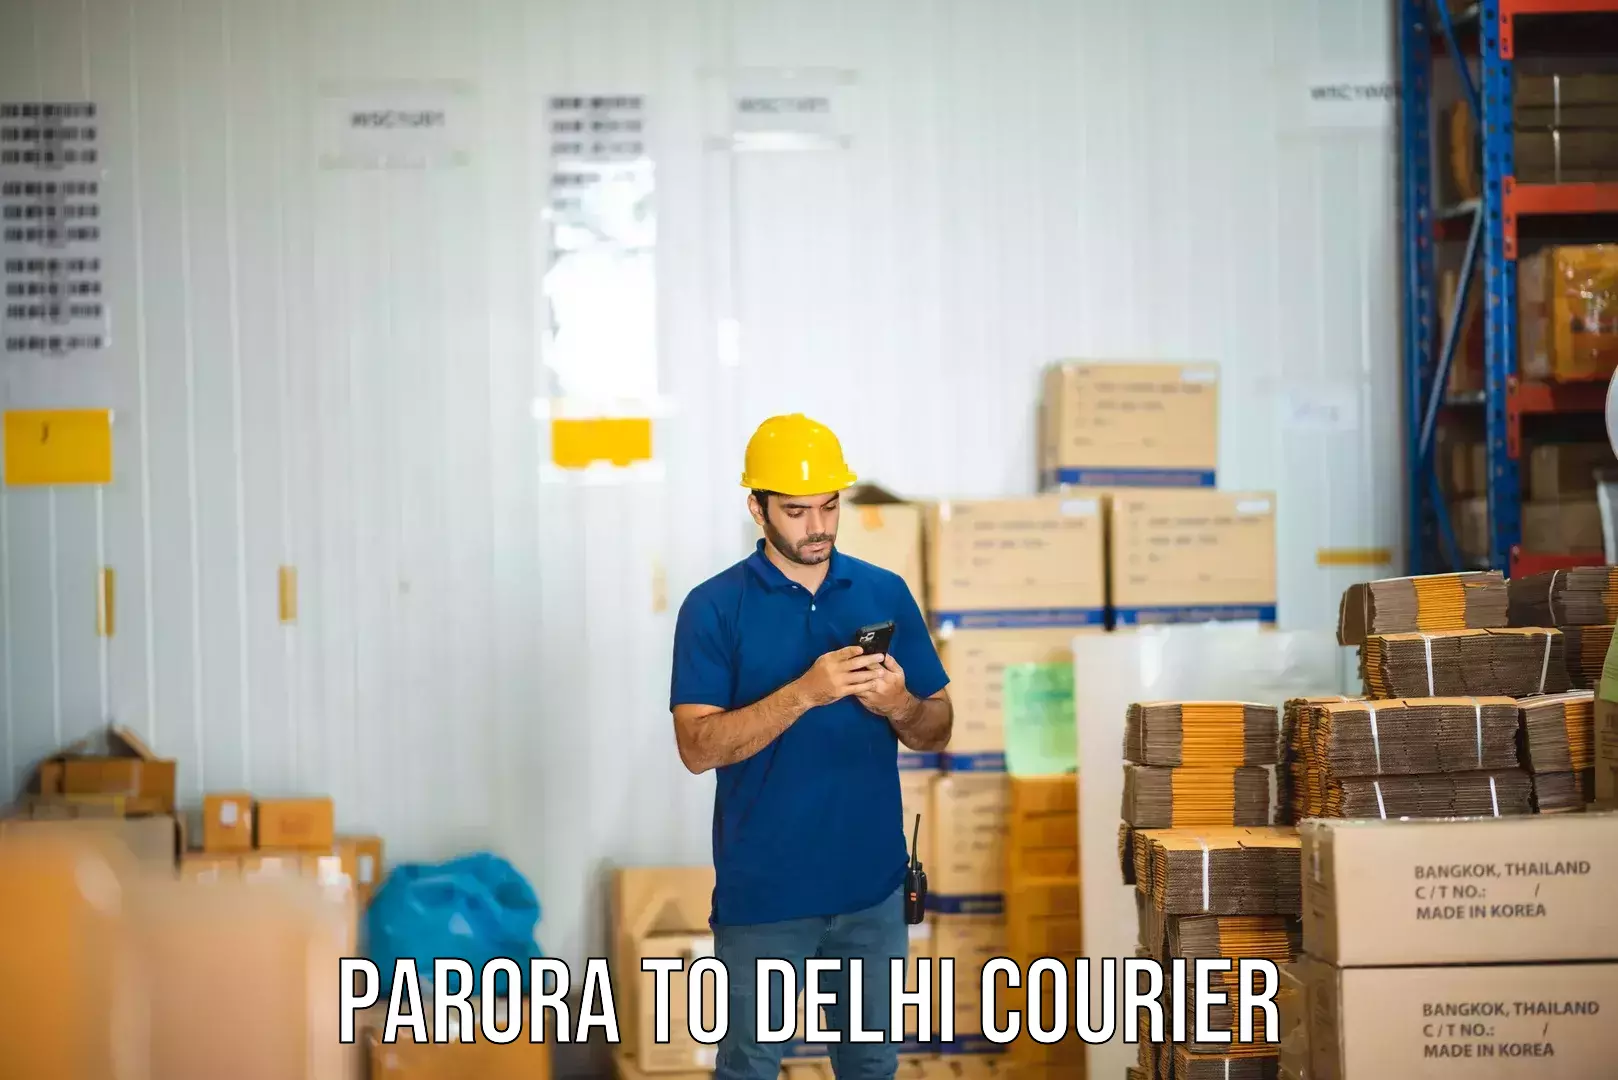 Sustainable courier practices Parora to Ashok Vihar